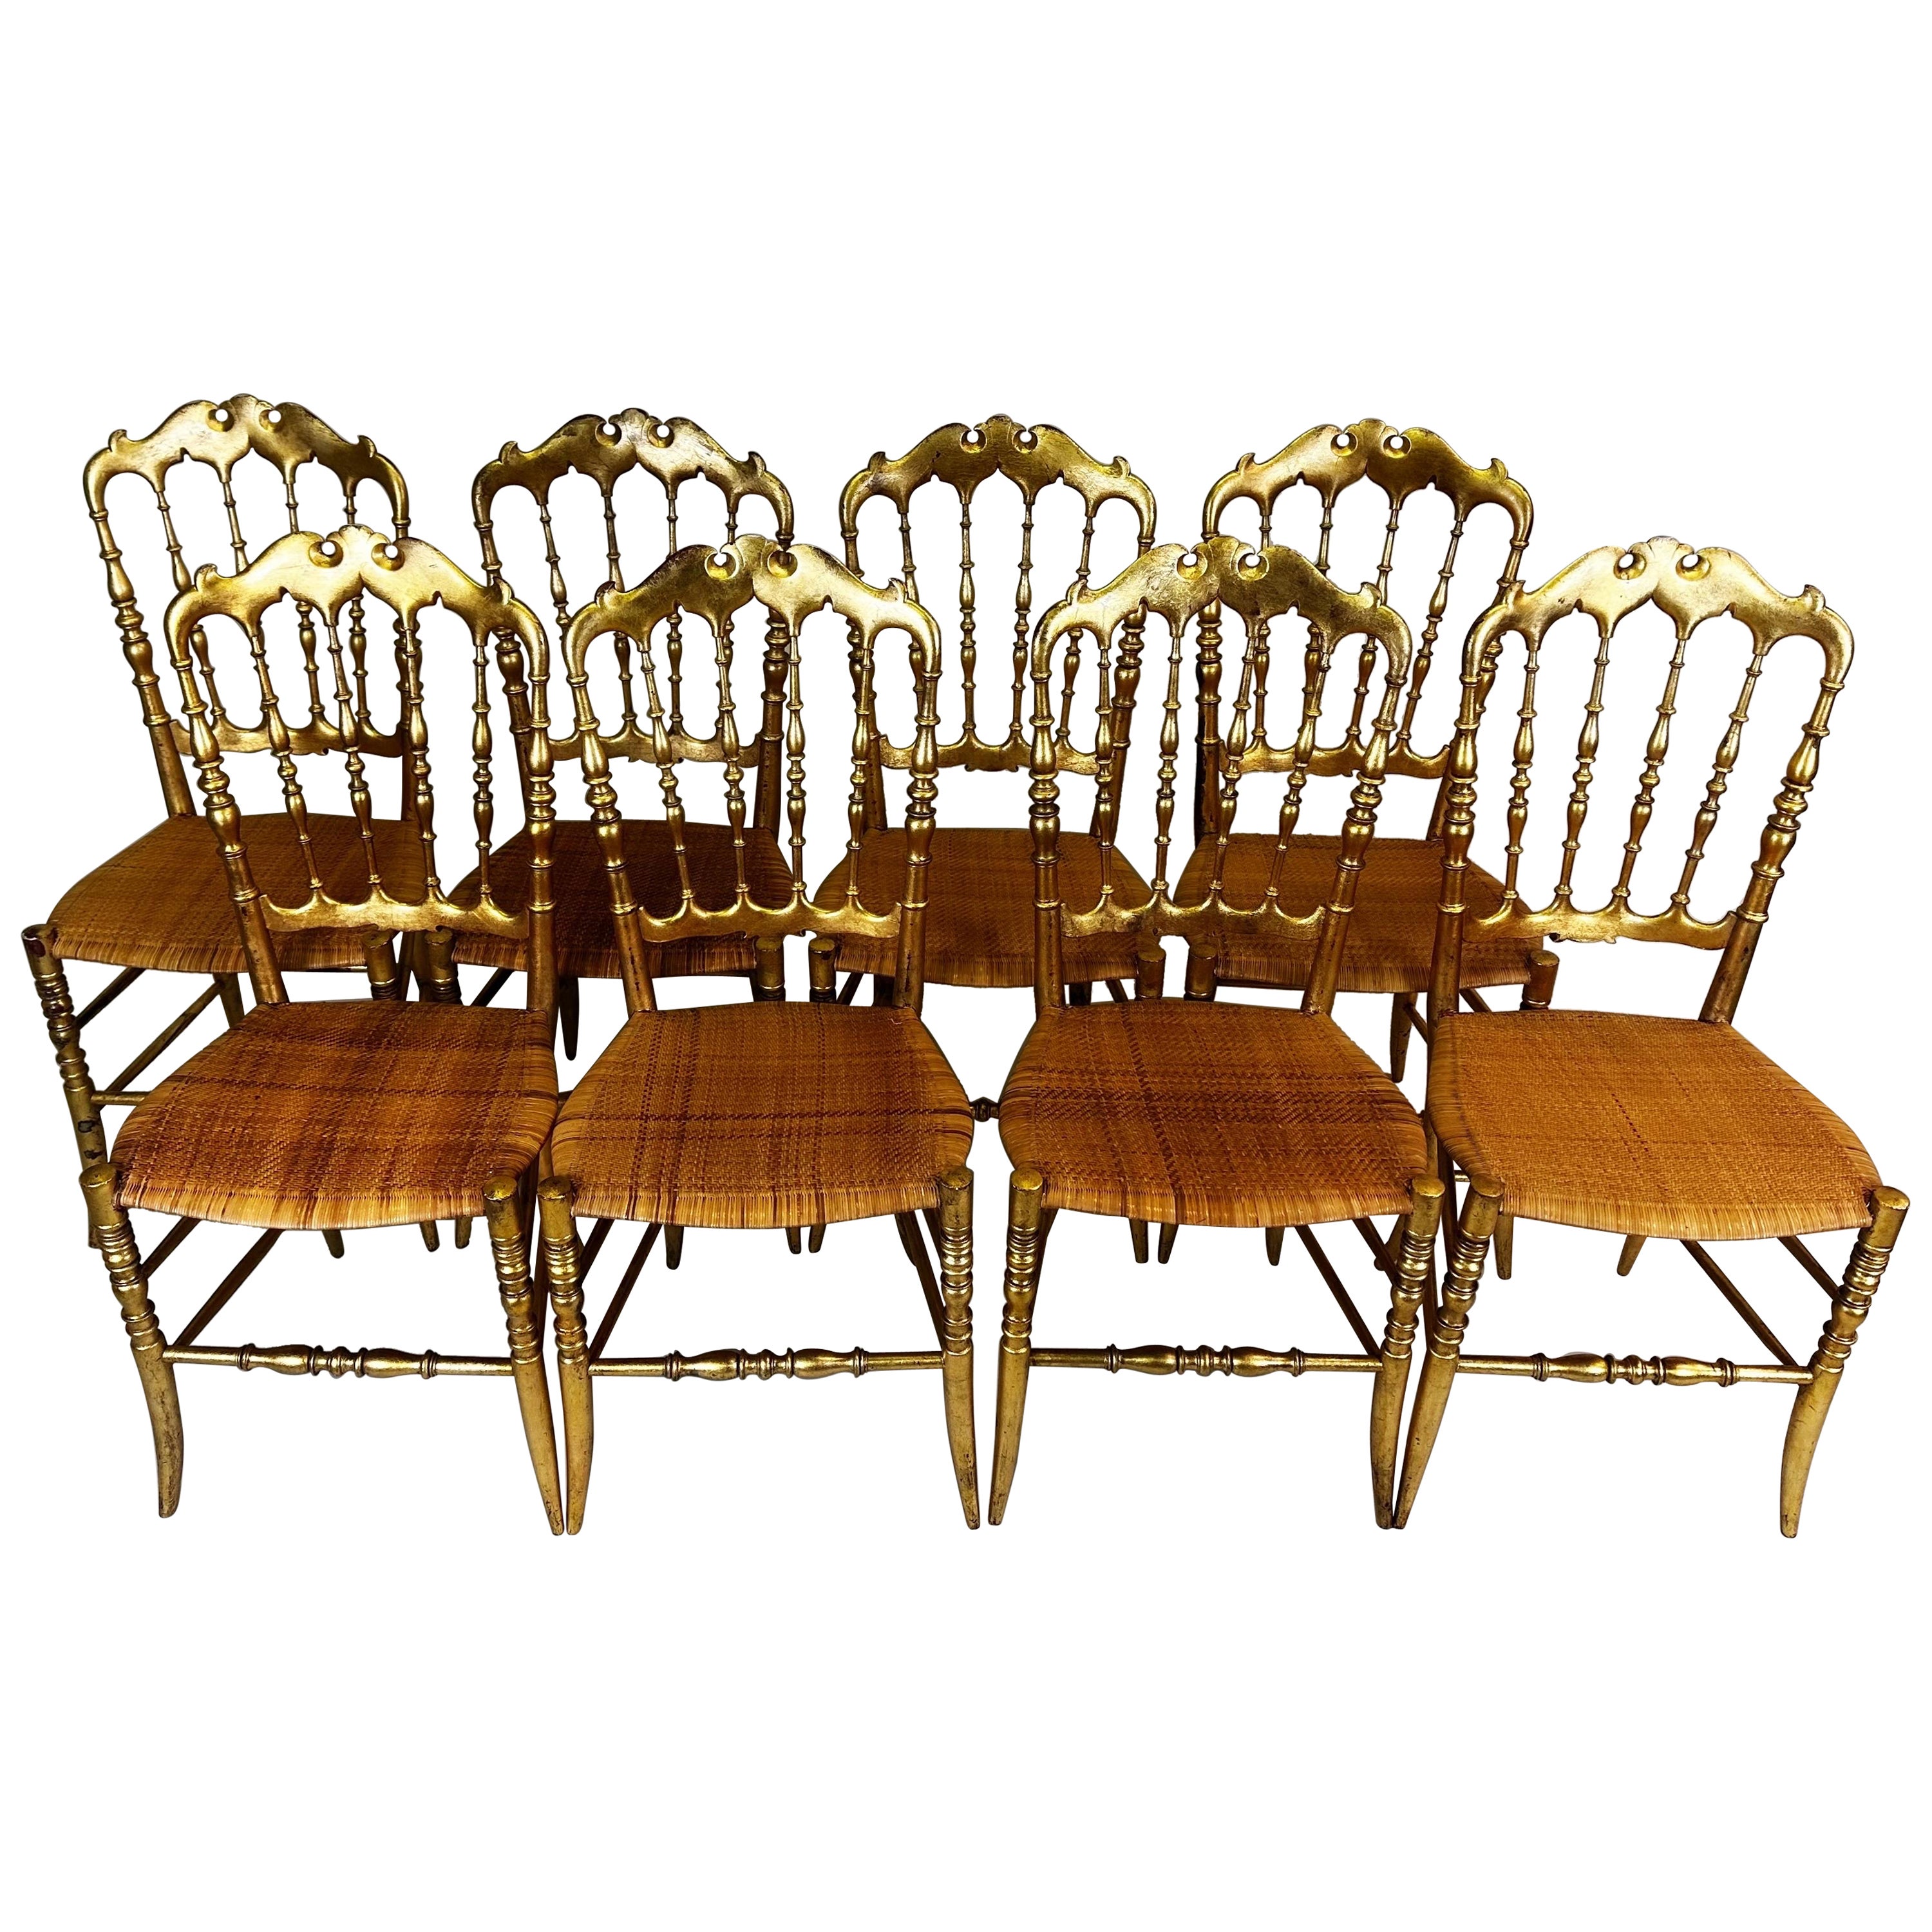 Satz von 8 modernen italienischen neoklassizistischen Esszimmerstühlen aus geschnitztem vergoldetem Holz und Rattan